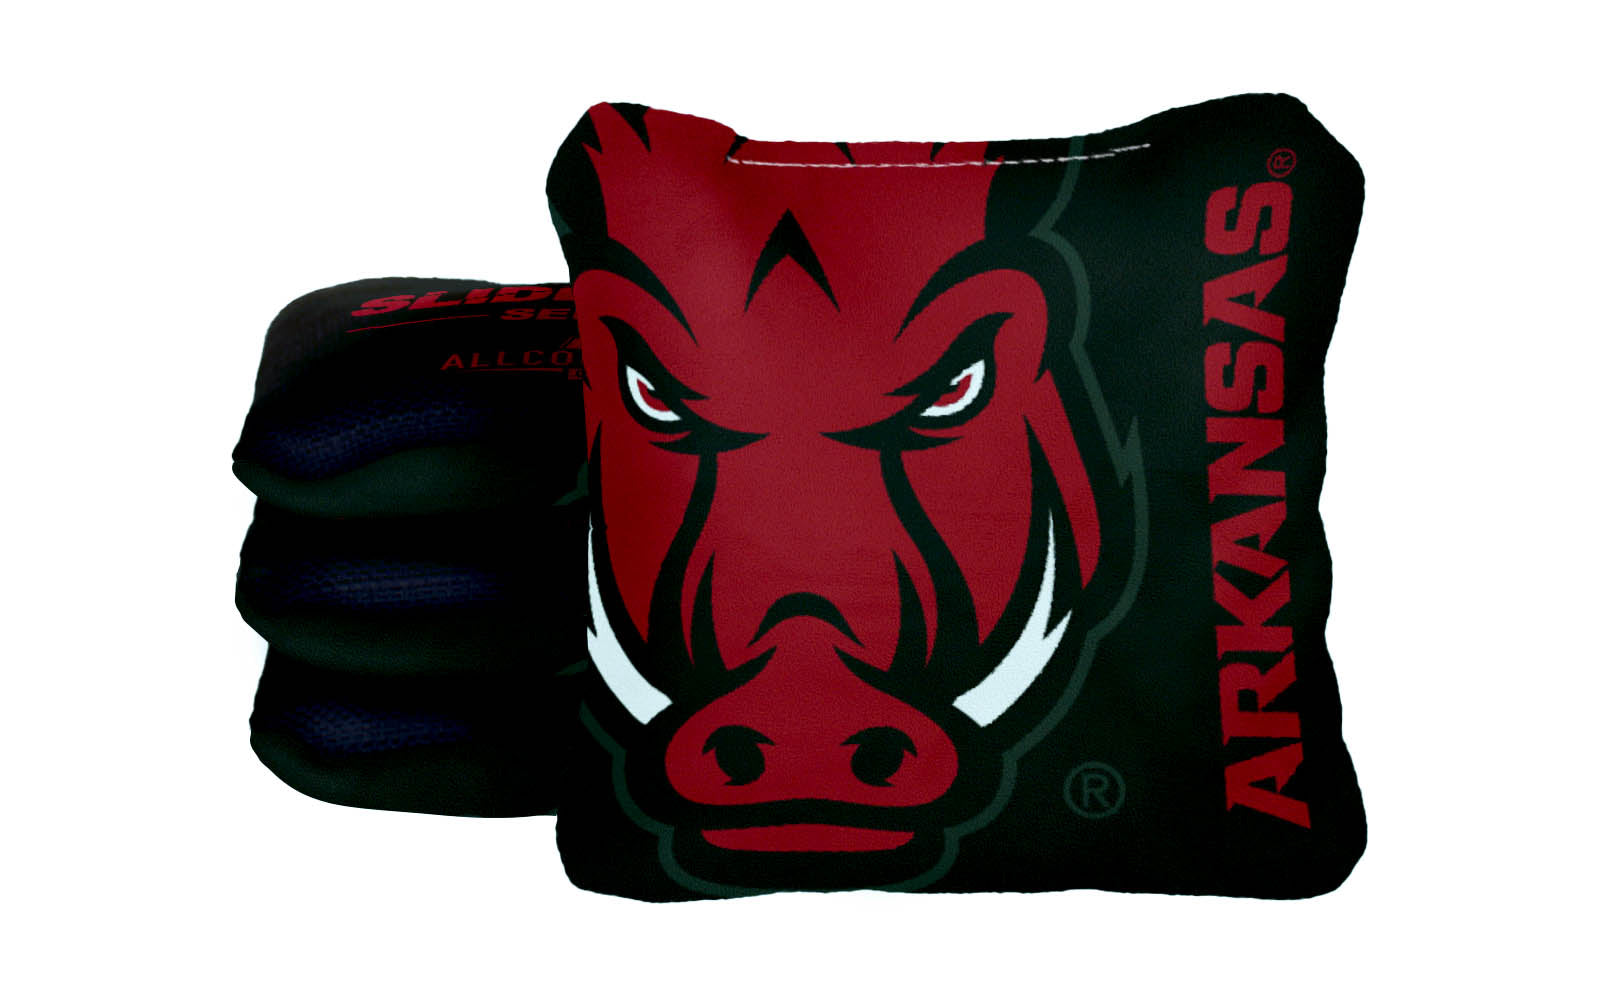 Officially Licensed Collegiate Cornhole Bags - Slide Rite - Set of 4 - University of Arkansas